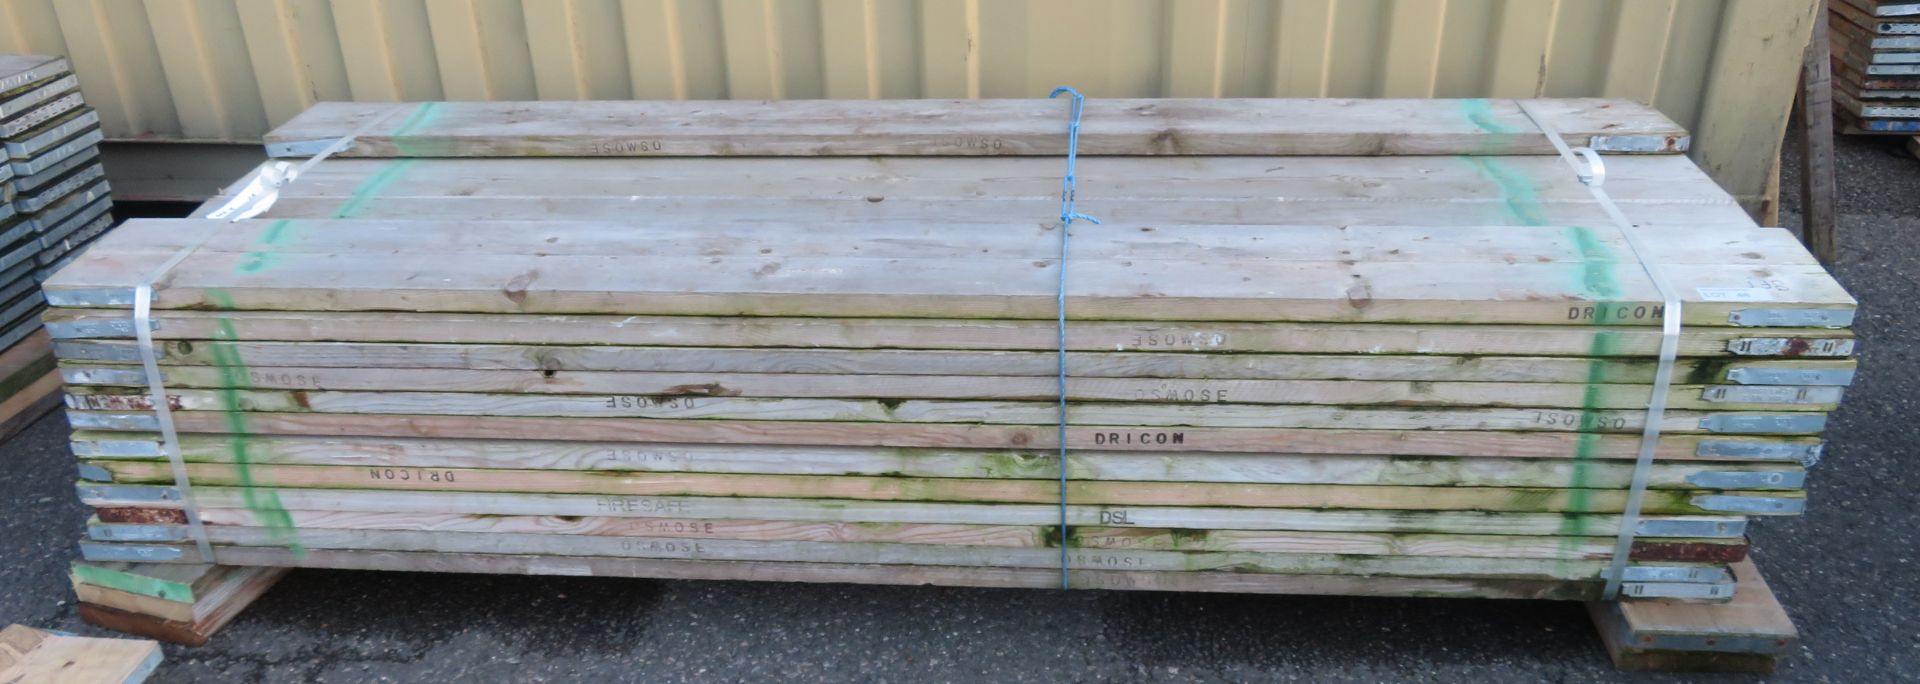 46x 8ft Wooden Scaffolding Board.